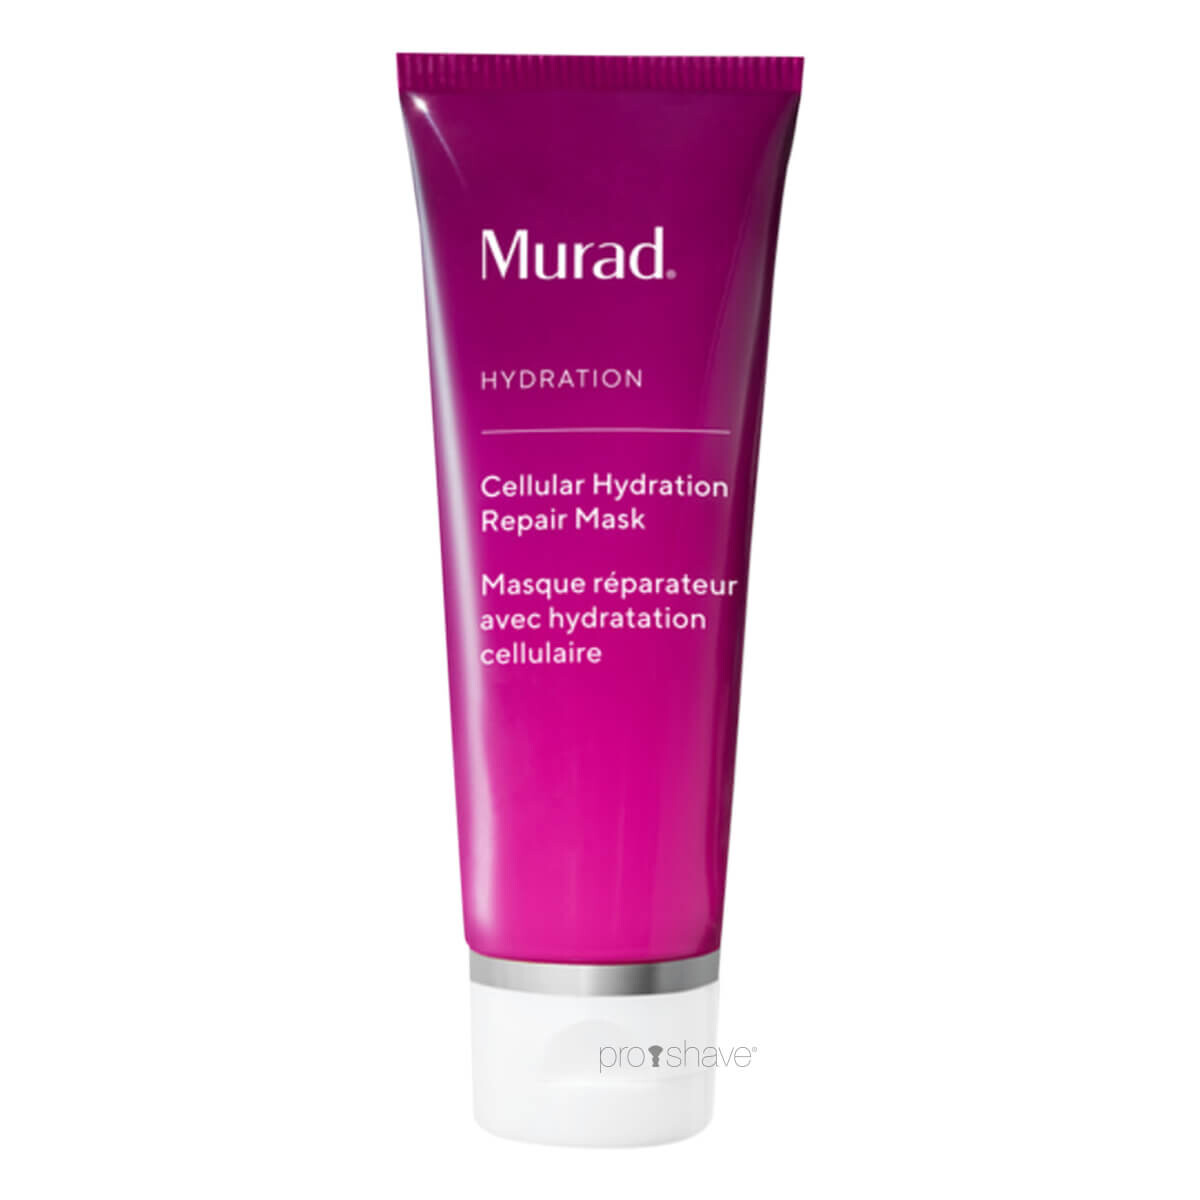 Murad Cellular Hydration Repair Mask, Hydration, 80 ml.